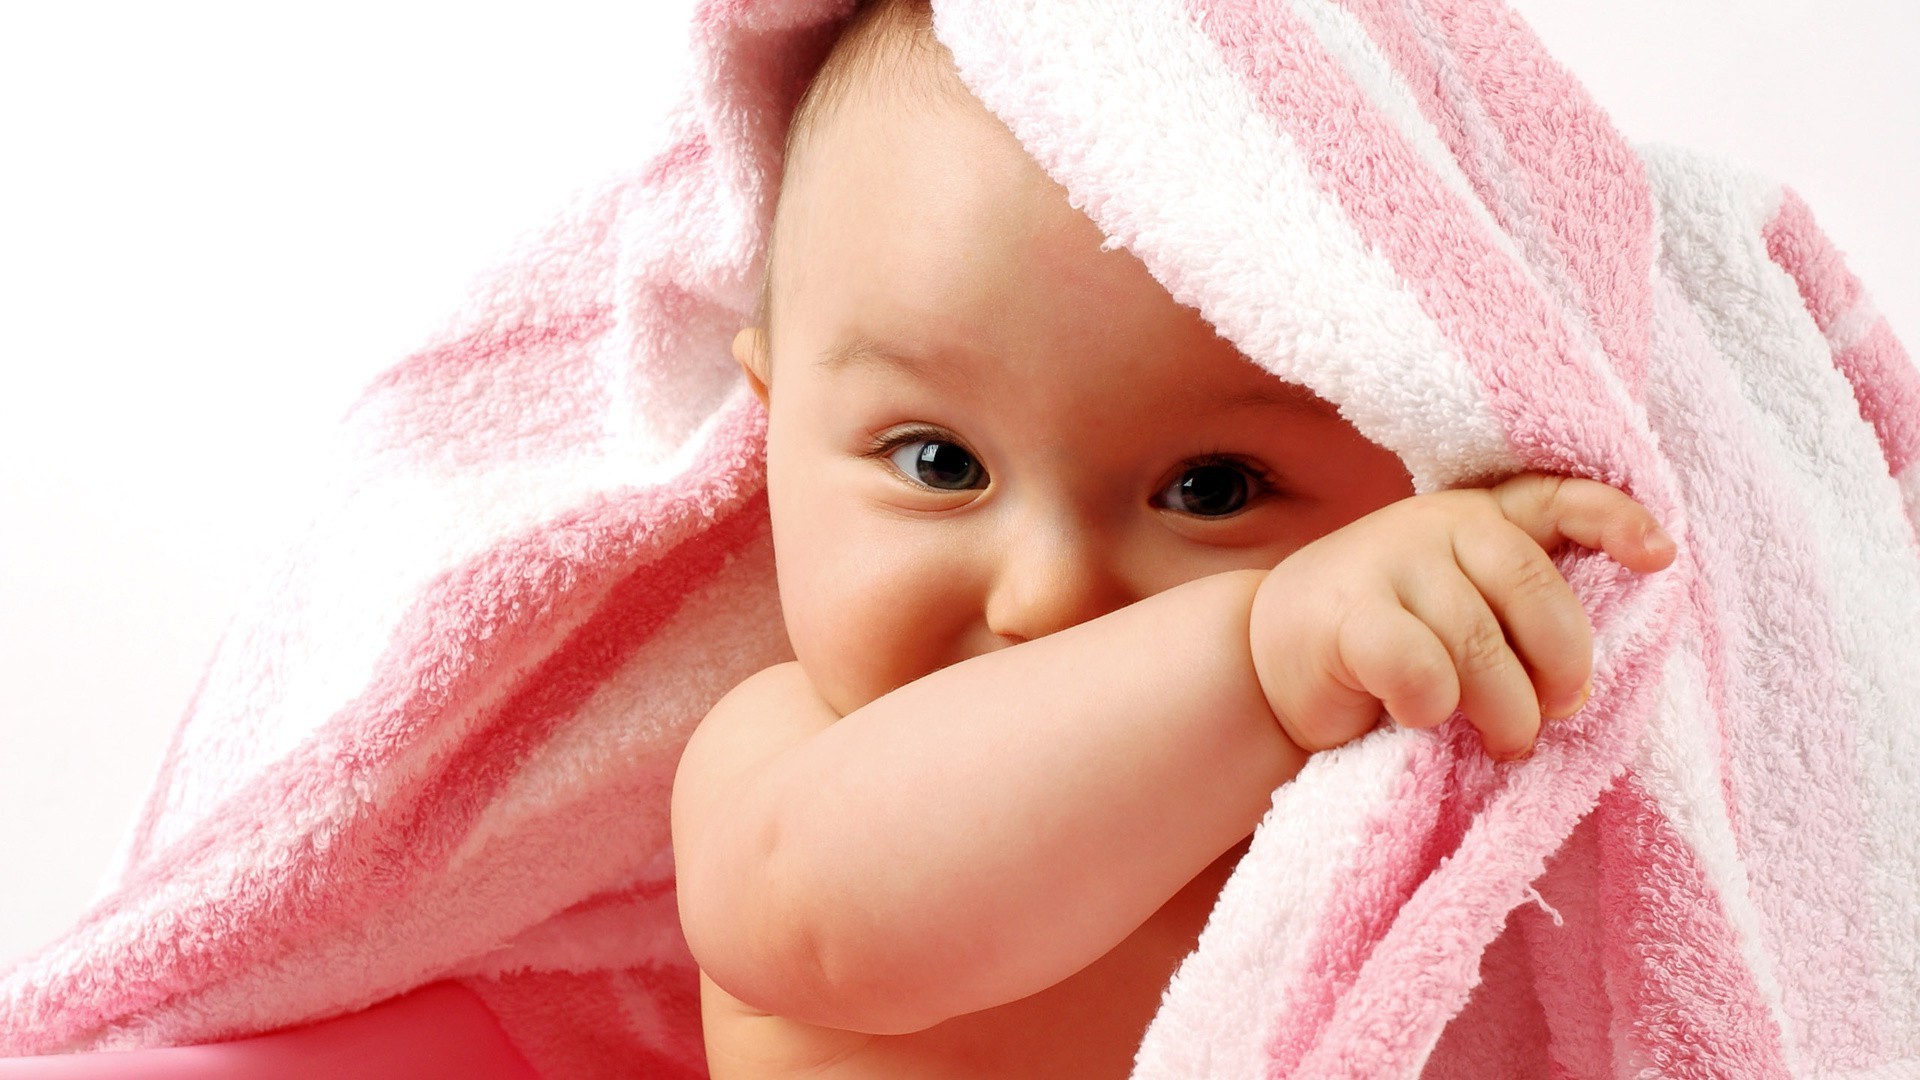 младенцы ребенок ребенок милые мало кожа полотенце чистые новорожденный ванна невинность лицо красивые